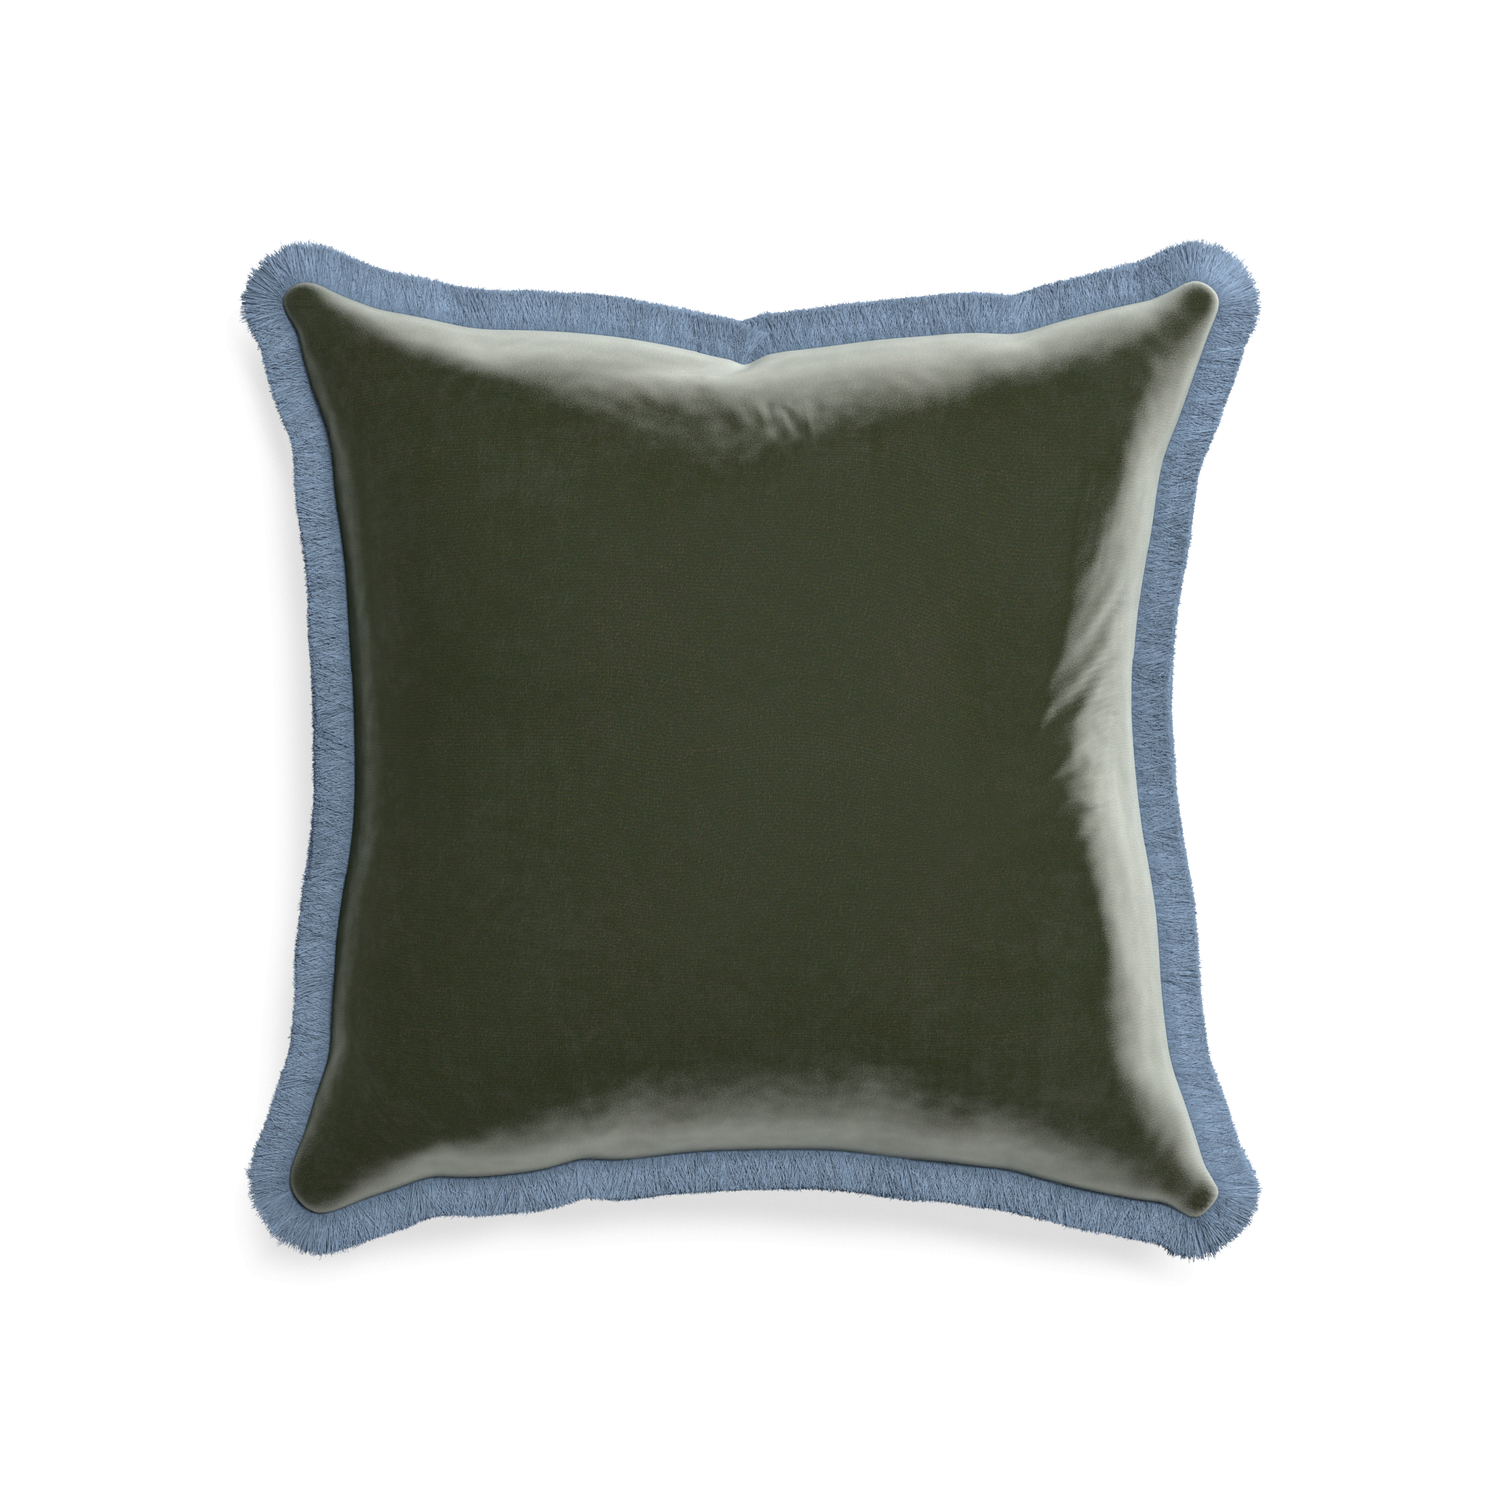 20-square fern velvet custom pillow with sky fringe on white background